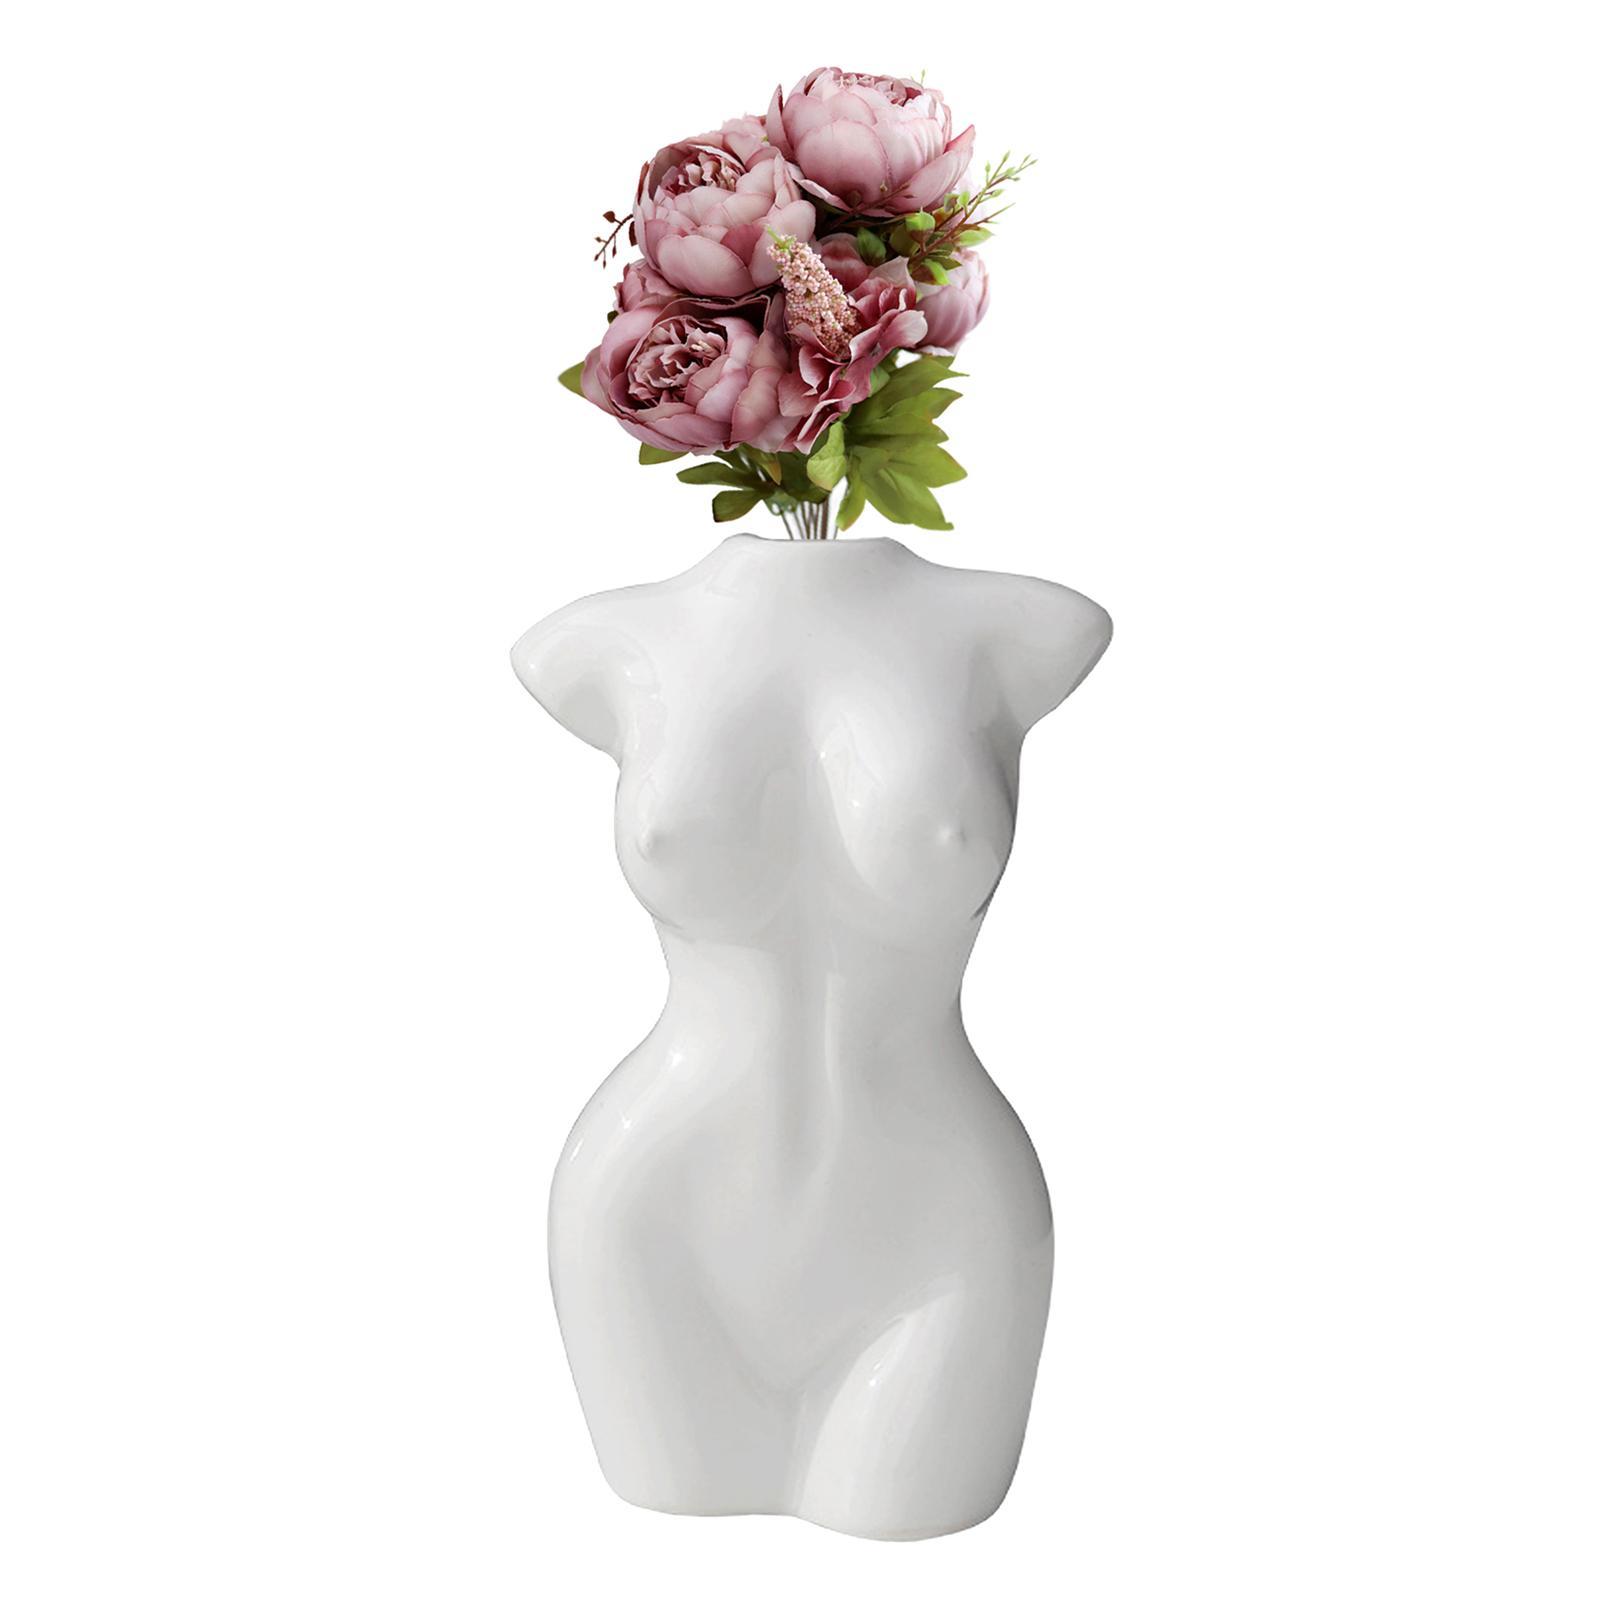 Female Body Flower Vase Female Body Sculpture Home Decor Gifts